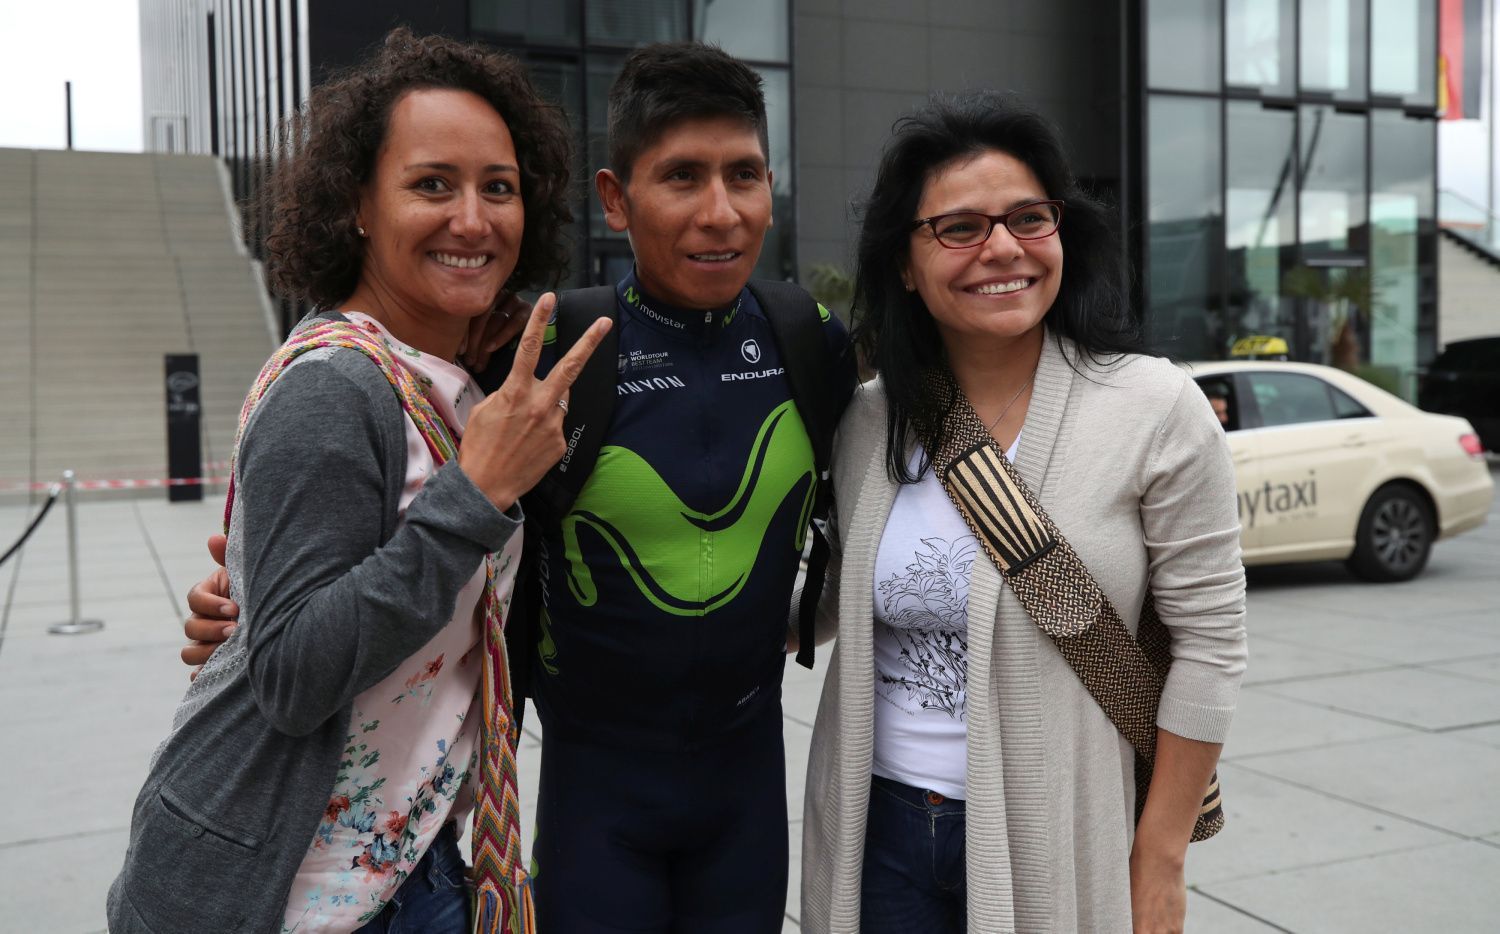 Tour de France 2017: Nairo Quintana